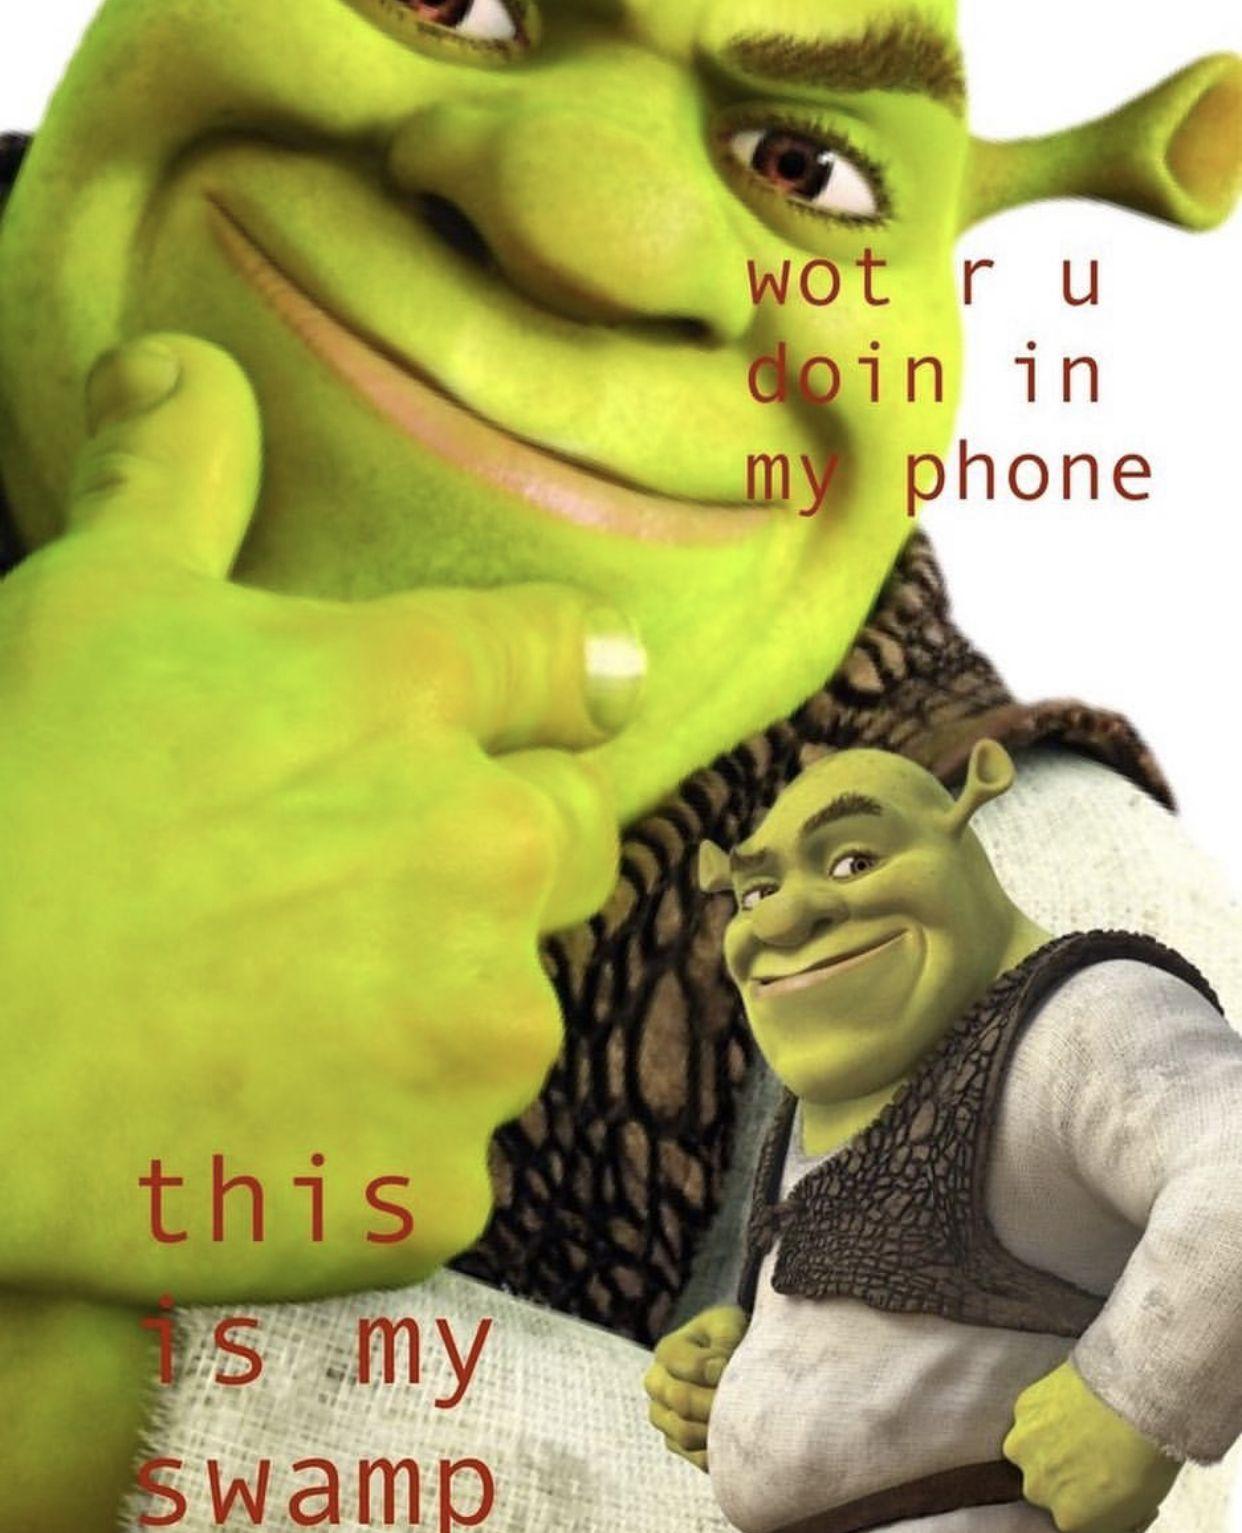 Funny Shrek Meme Wallpapers